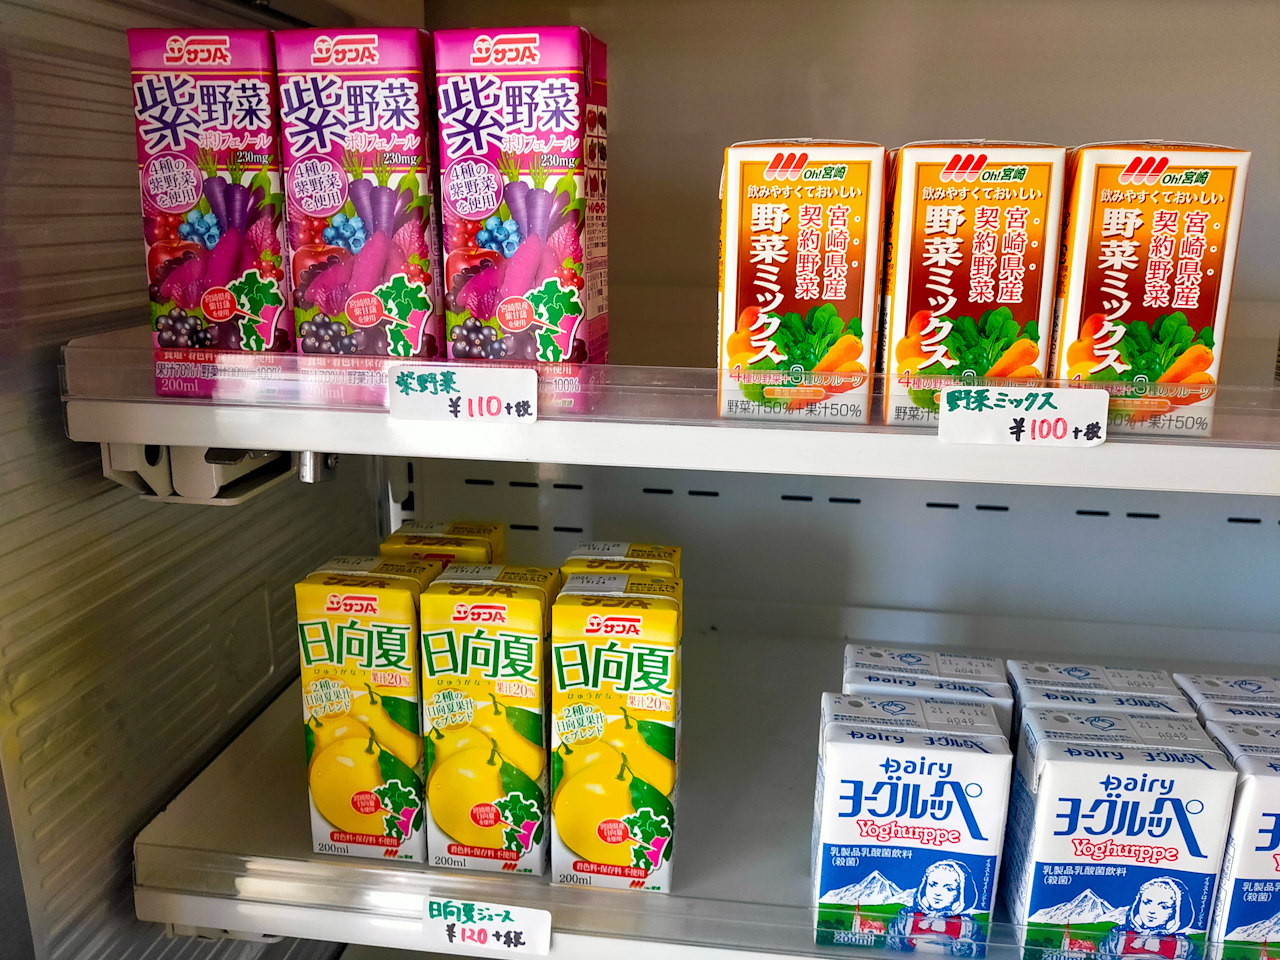 九州・宮崎で販売されている飲料。右下の「ヨーグルッペ」は九州出身の方は馴染みがあるのでは。